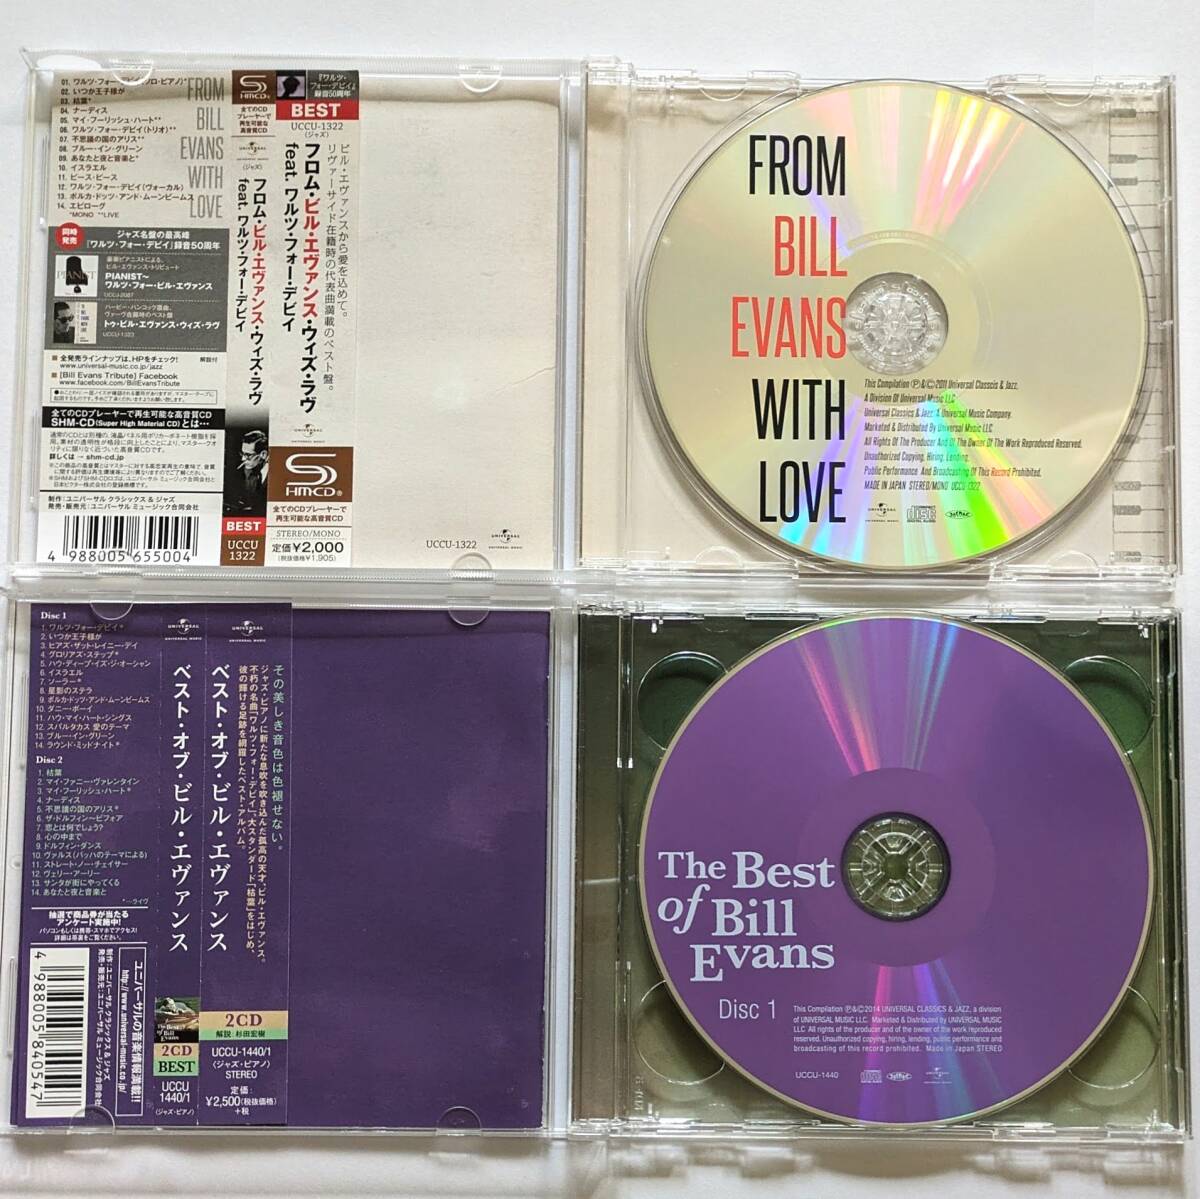 BILL EVANS ビル・エヴァンス 国内盤CD 6枚セット/ジム・ホール/2CDベスト盤/Waltz for Debby/アローン+2/シンフォニー・オーケストラの画像6